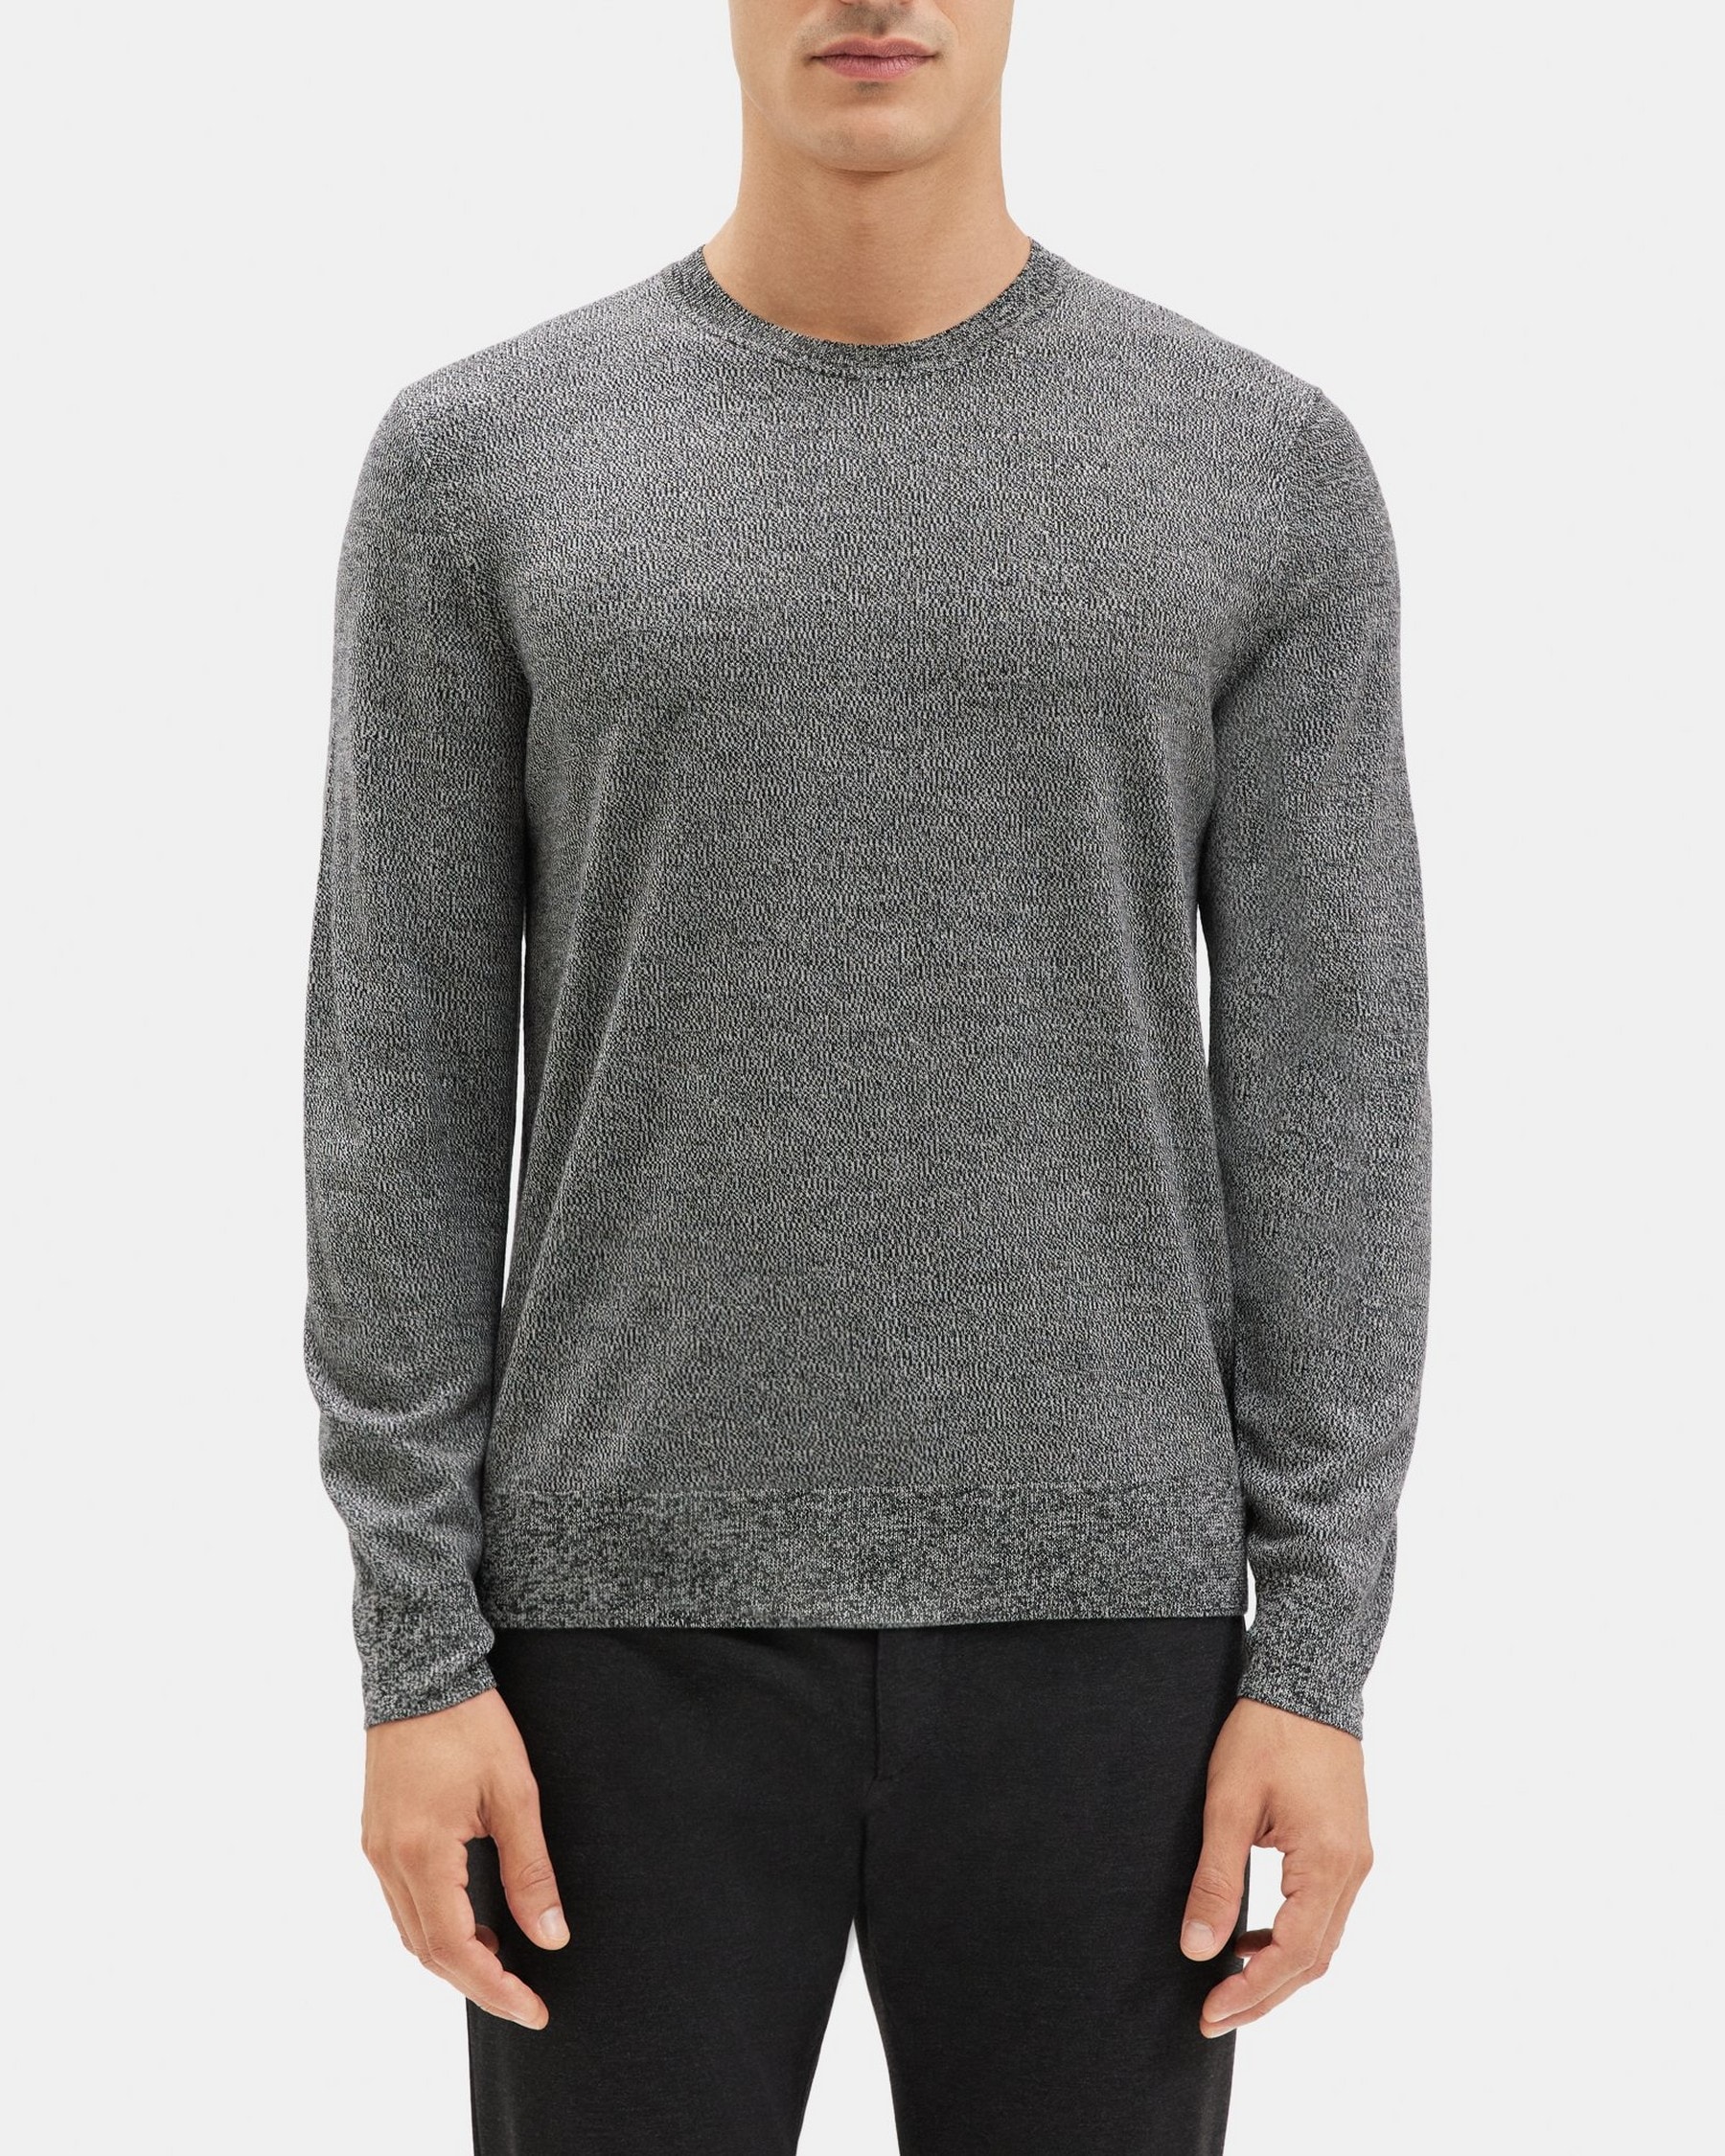 띠어리 Theory Crewneck Sweater in Merino Wool,BLACK/WHITE